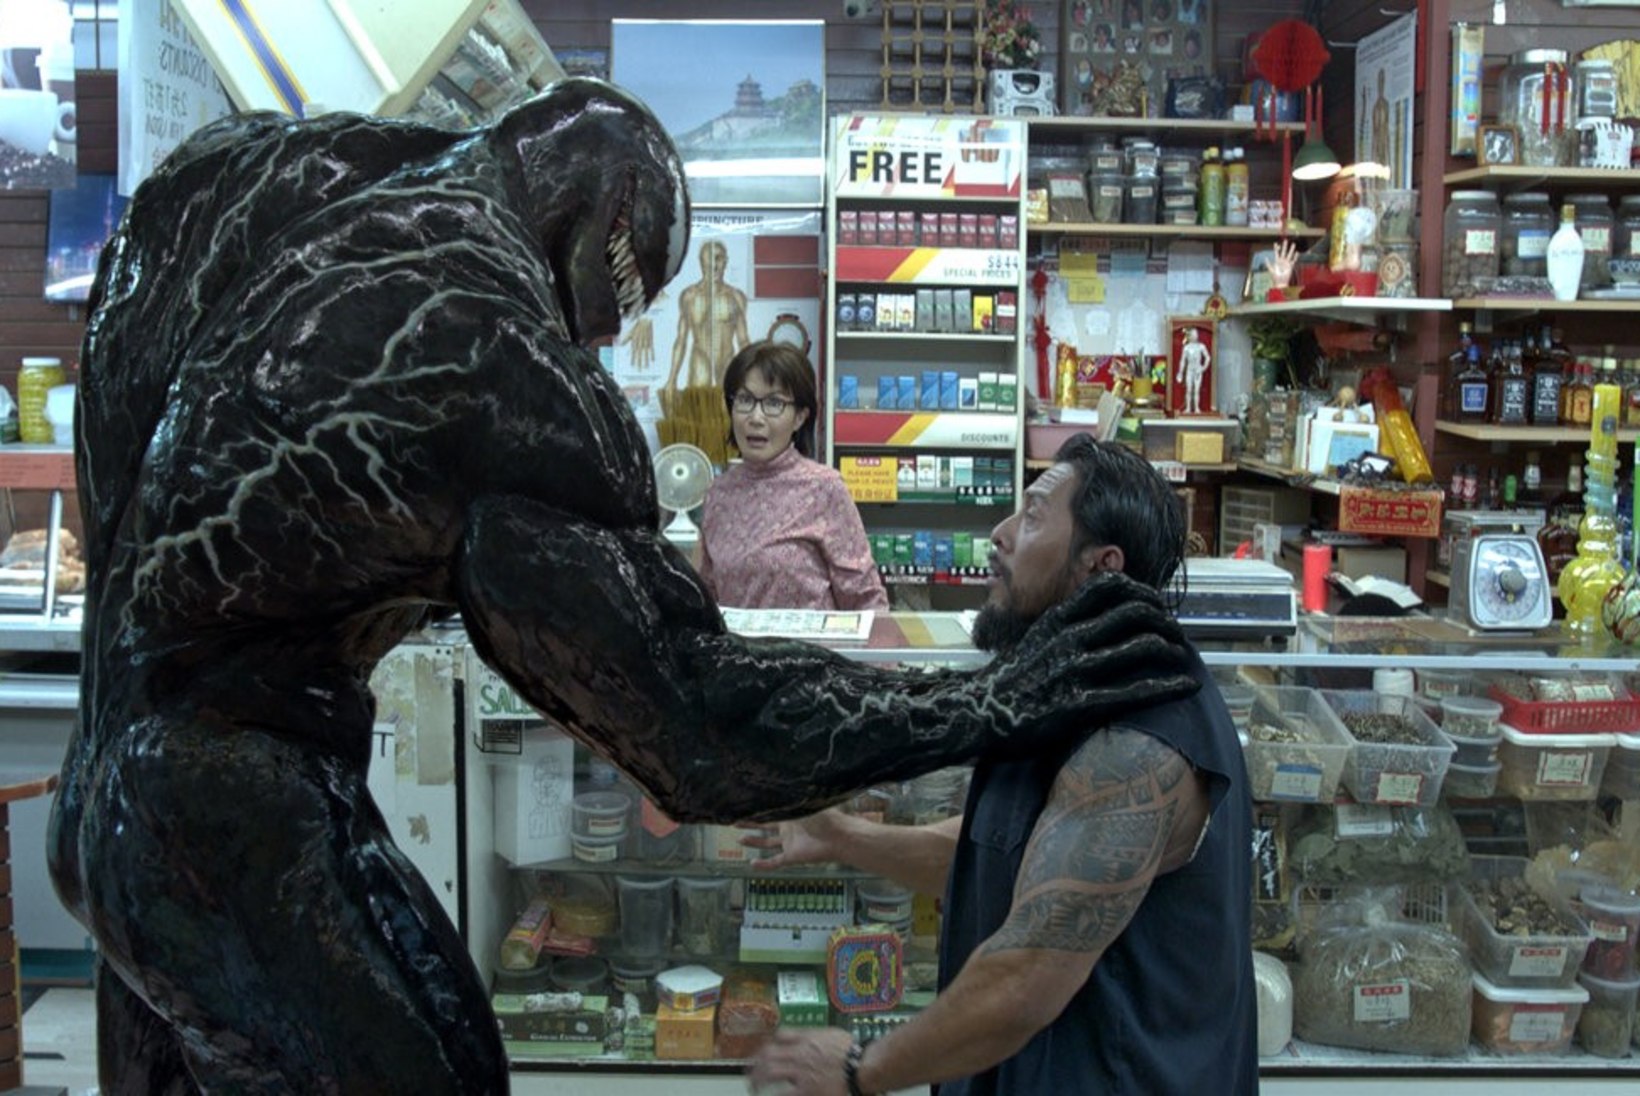 ARVUSTUS | „Venom“ on halb, aga Tom Hardyl on p*hhui ja see on positiivne!